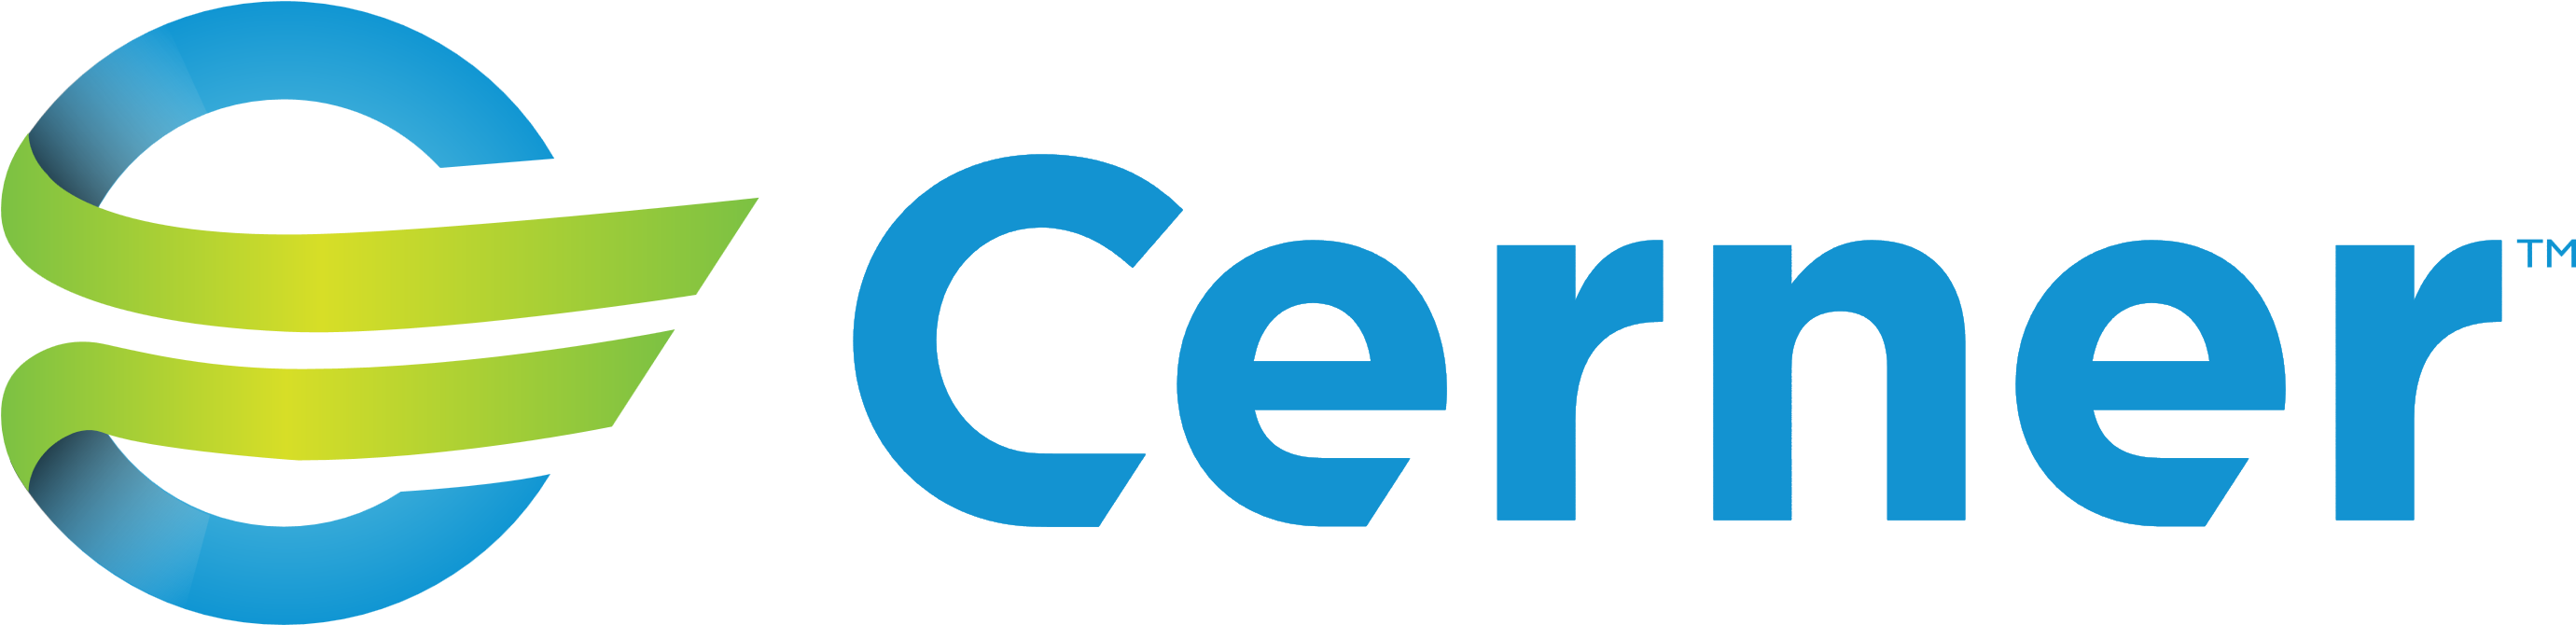 Learn More - Cerner Logo Png (2850x770)